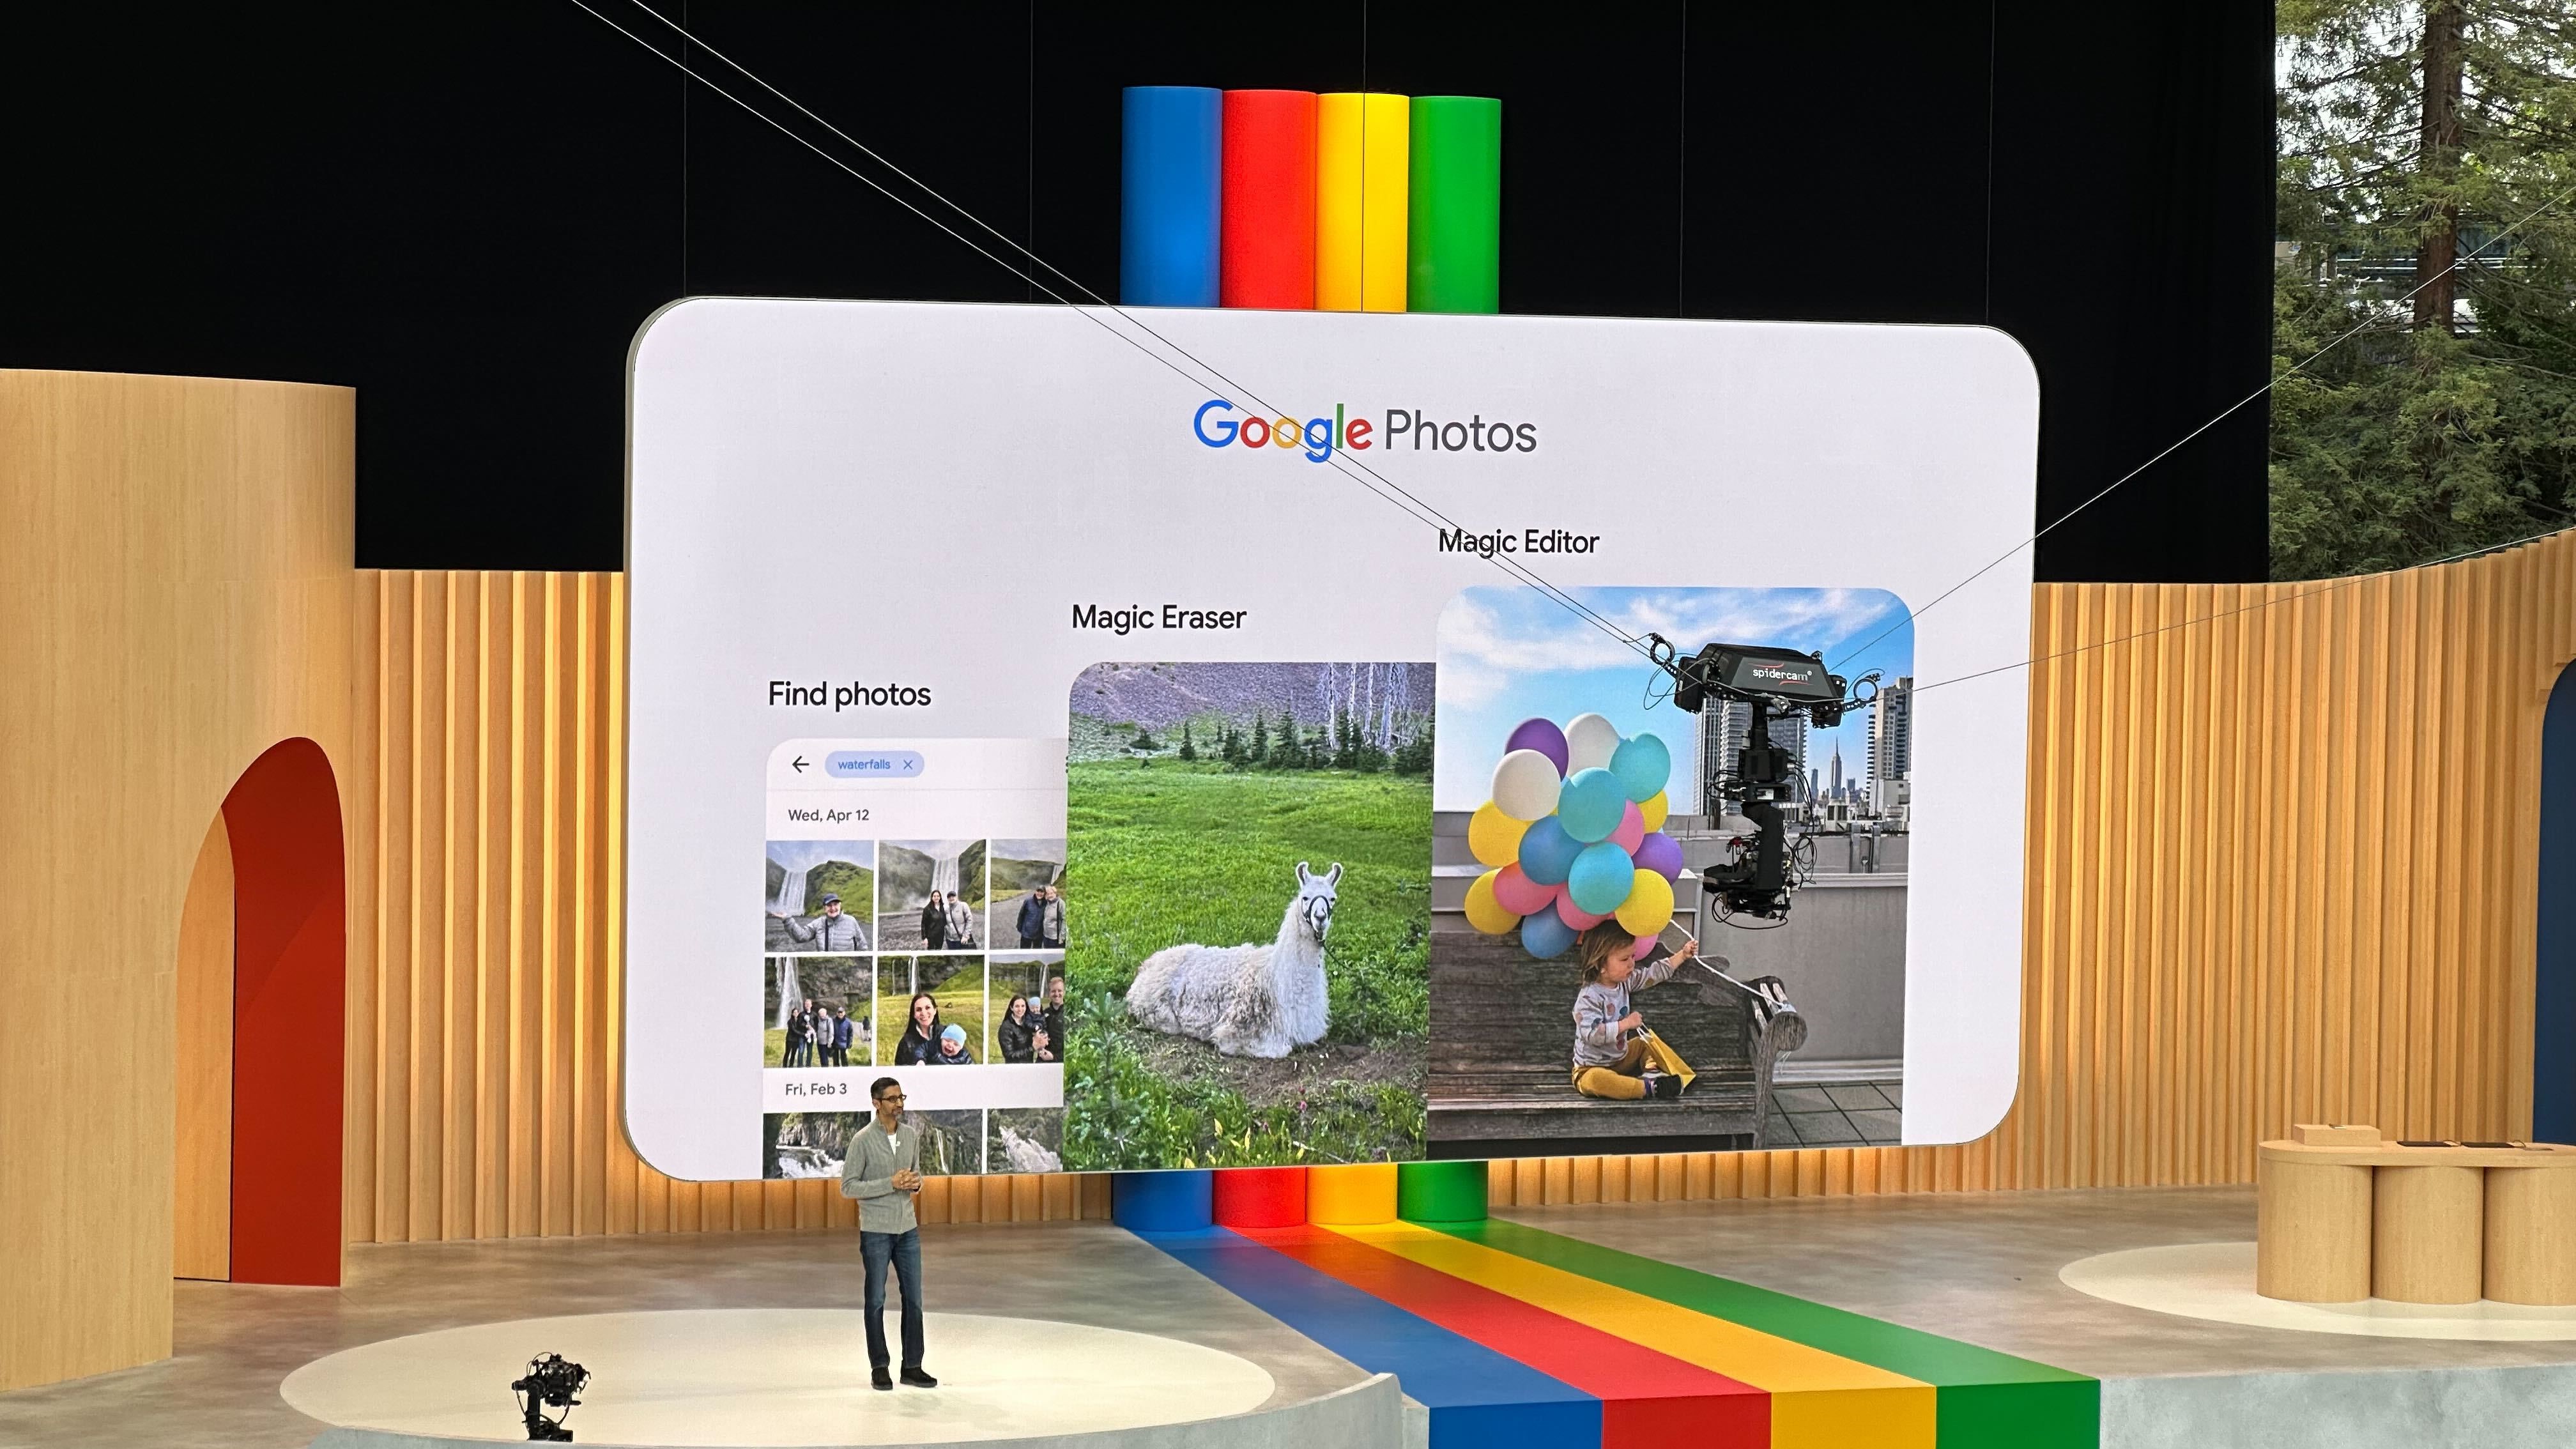 Ferramenta de borracha mágica do Google Fotos sendo exibida no palco